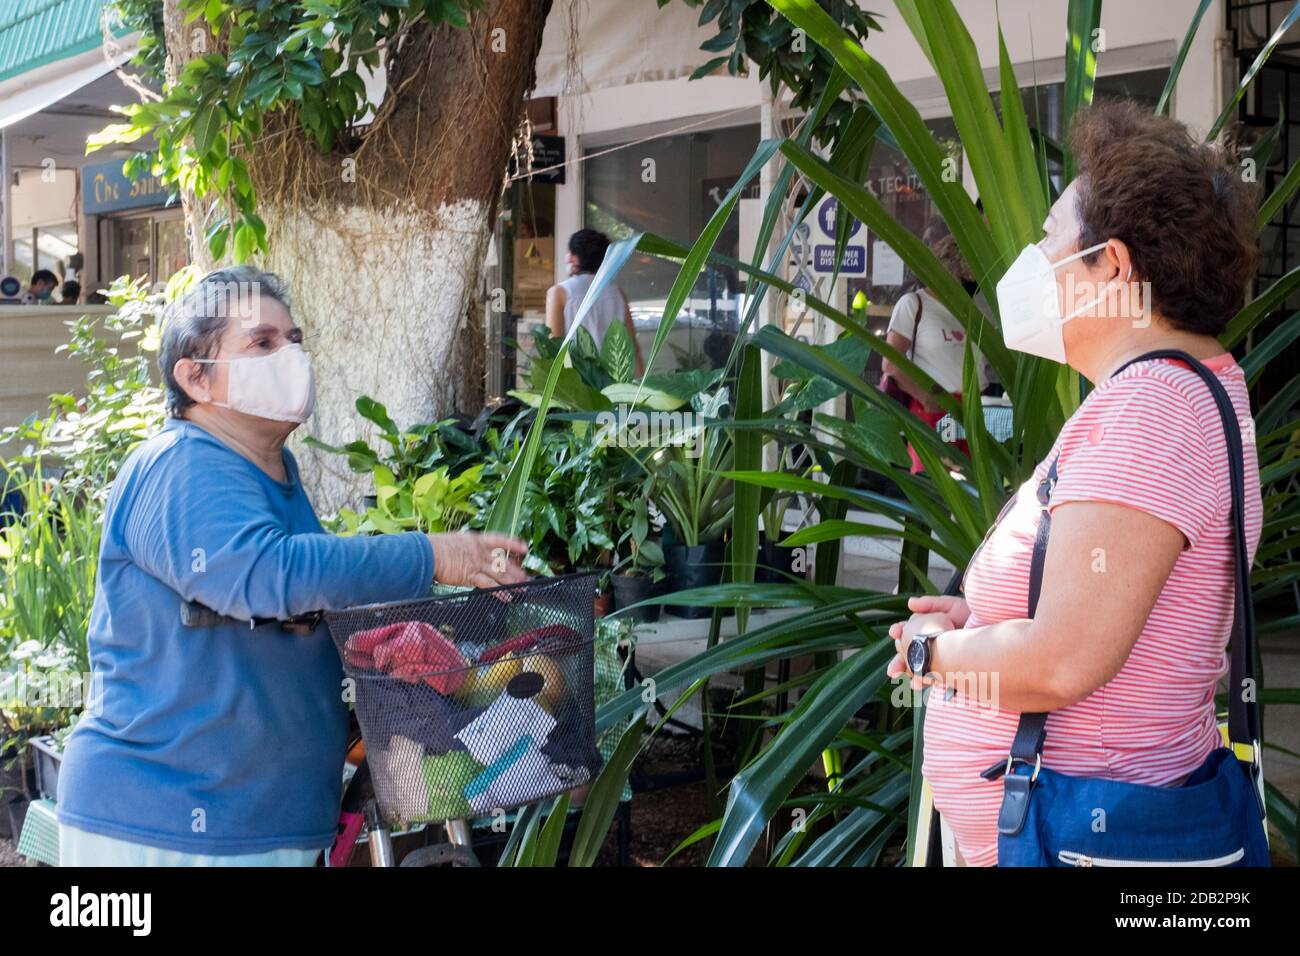 Mujeres mexicanas con mascarillas, Covid Pandemic, Meruda, Yucatán, México Foto de stock